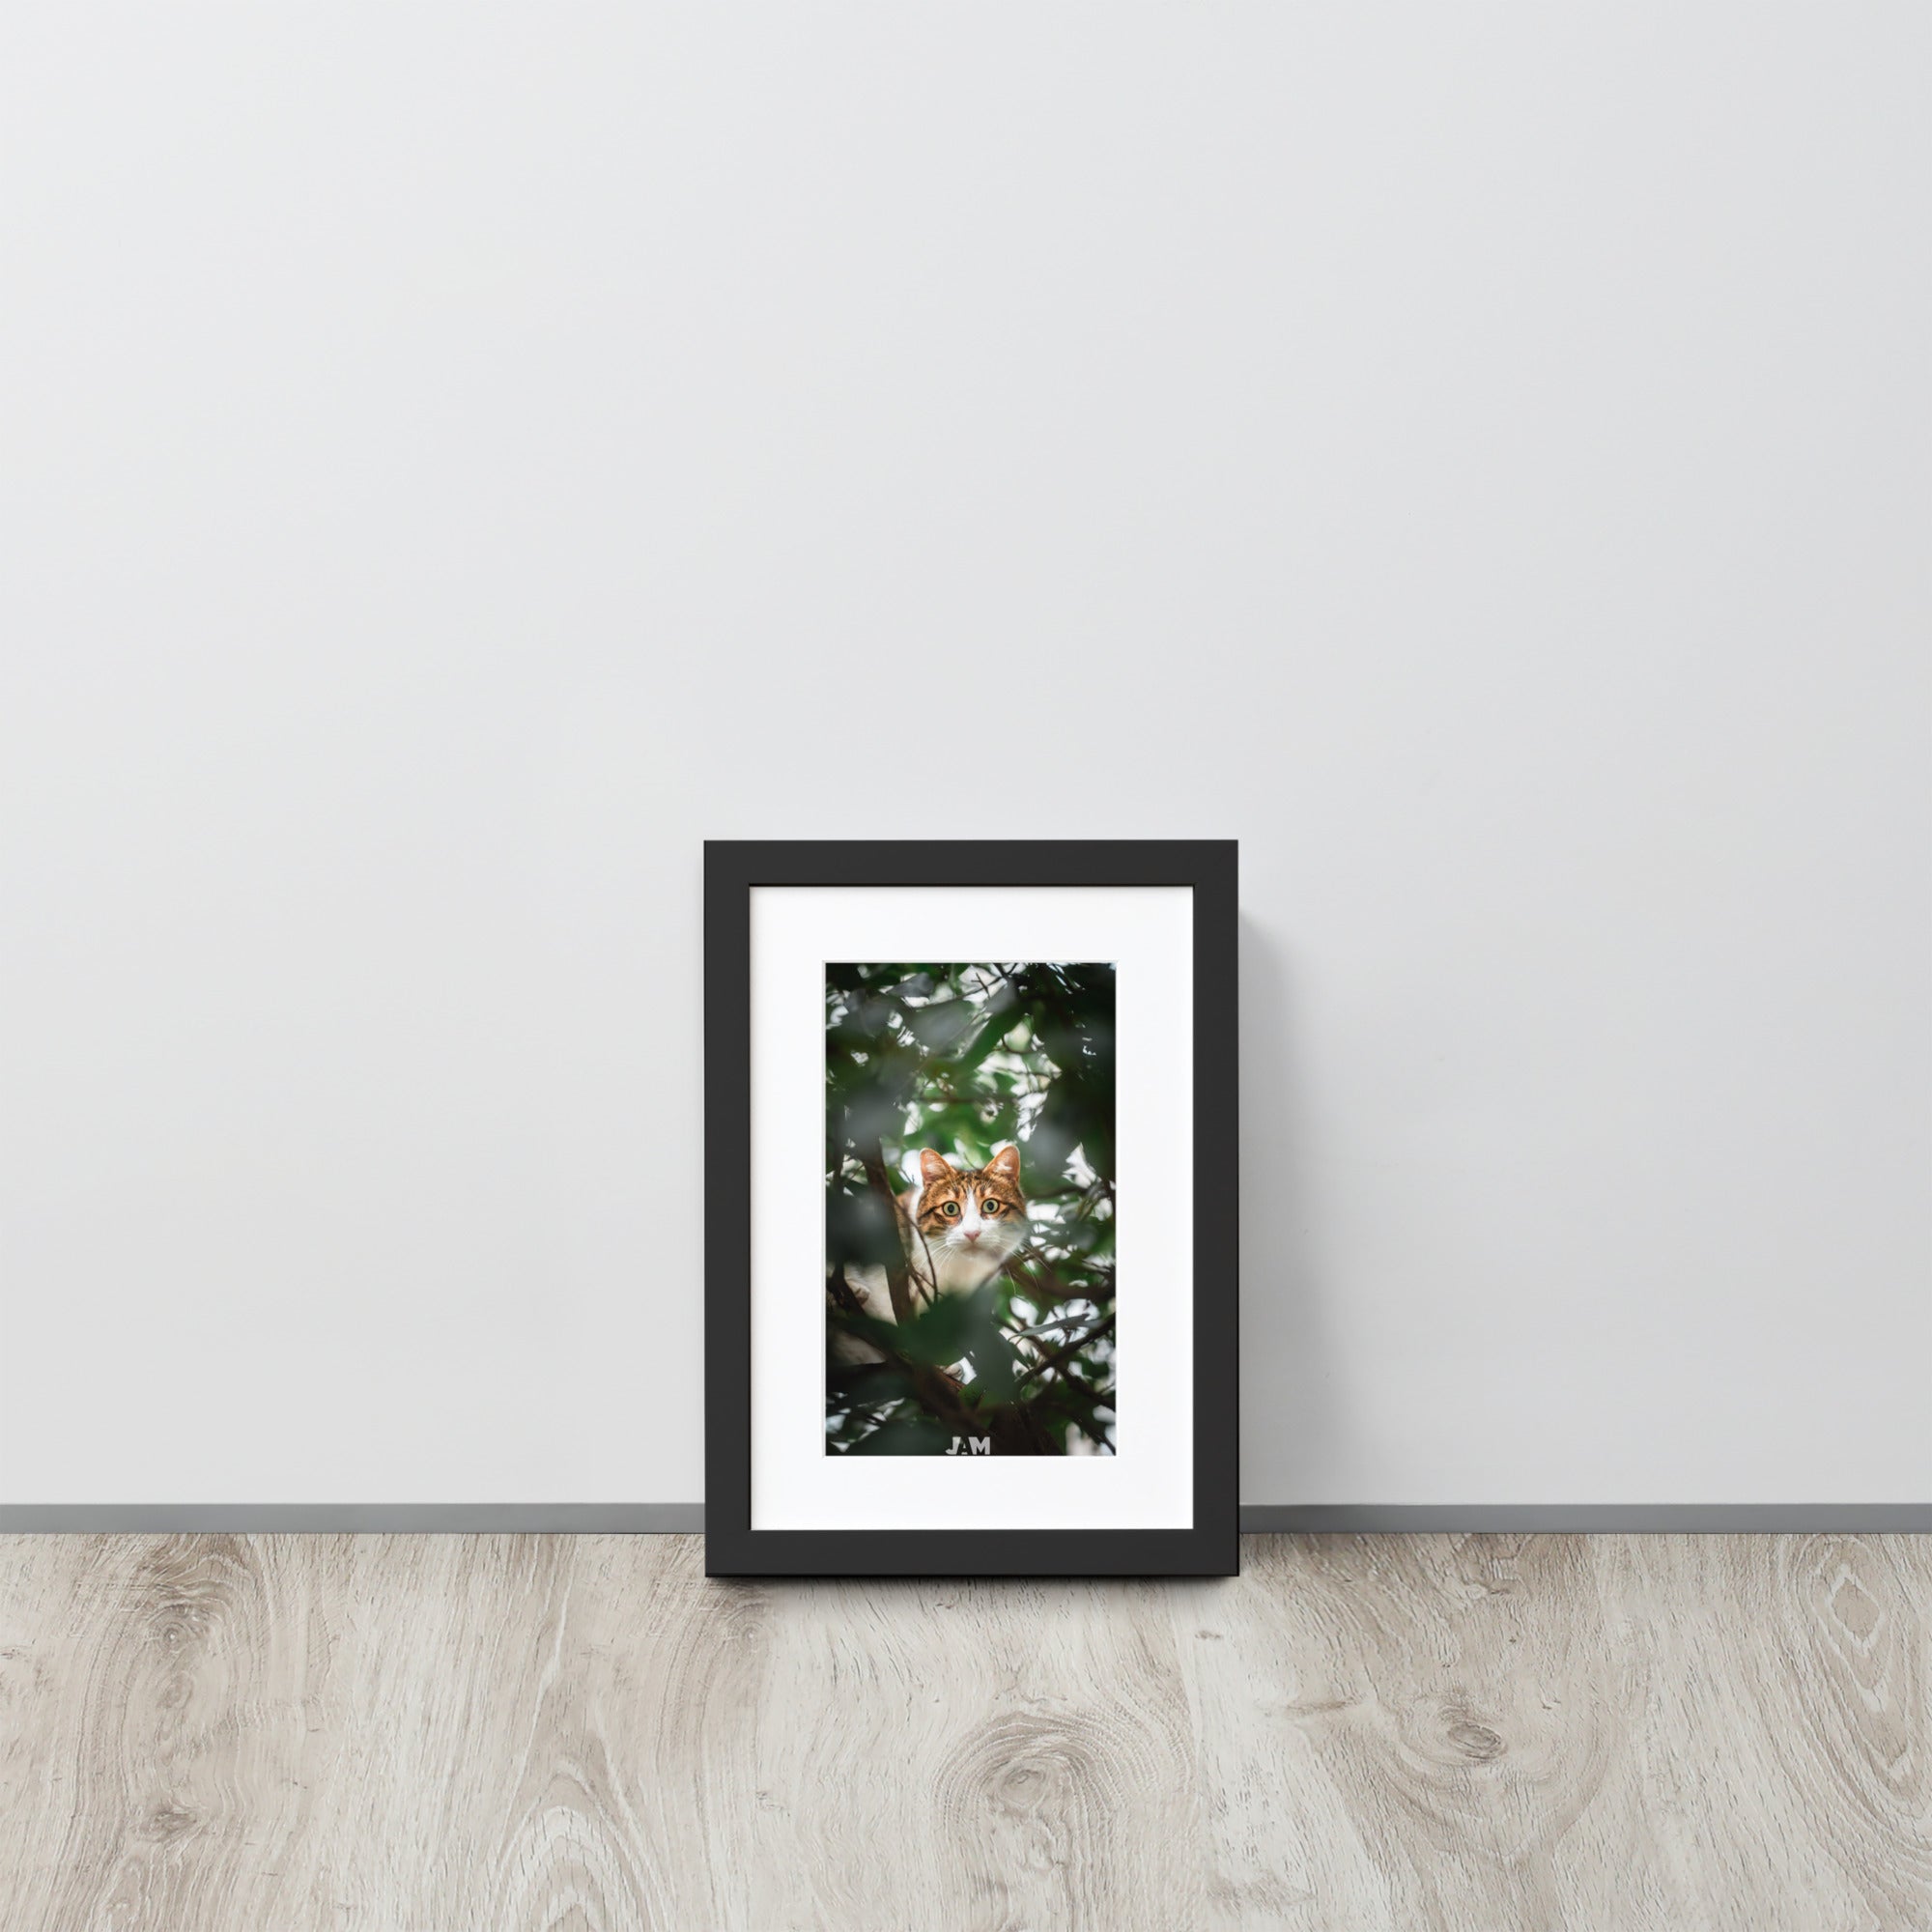 Poster 'Gros yeux', mettant en scène un chat dissimulé derrière des plantes, ses yeux largement ouverts fixant l'objectif avec intense curiosité et malice, capturé magnifiquement par le photographe Julien Arnold.